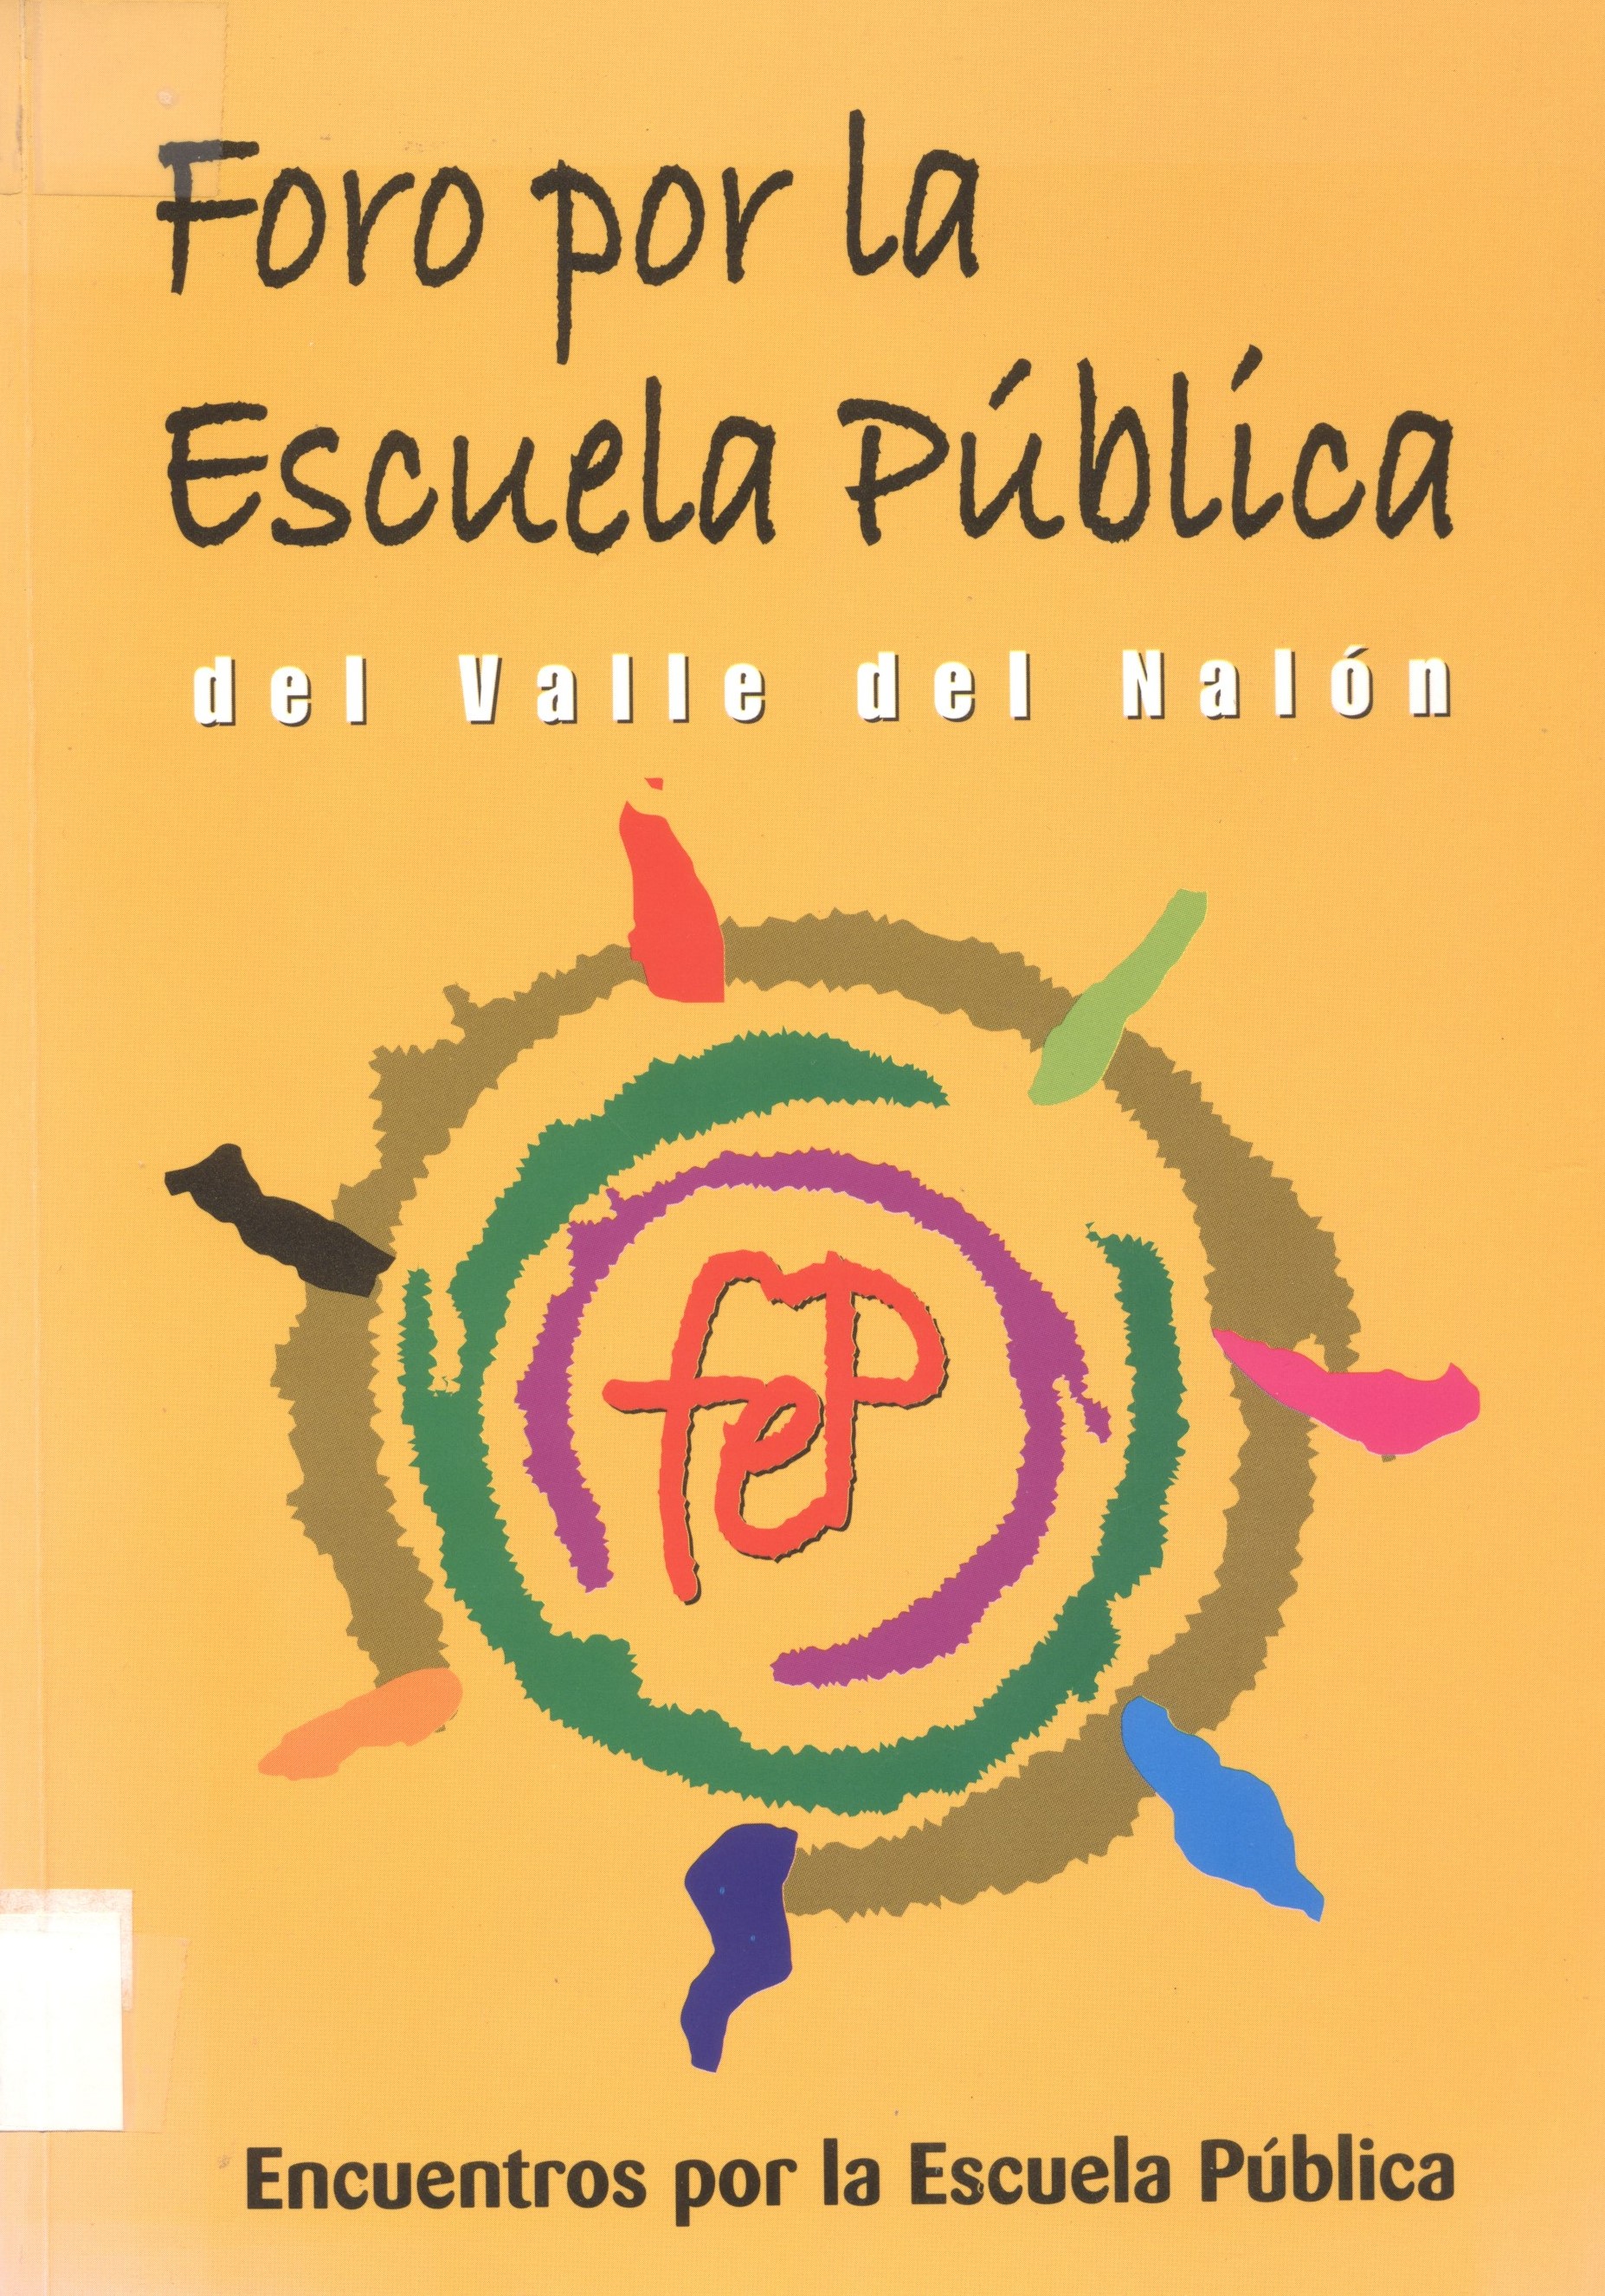 Imagen de portada del libro Encuentros por la Escuela Pública / Foro por la Escuela Pública del Valle del Nalón